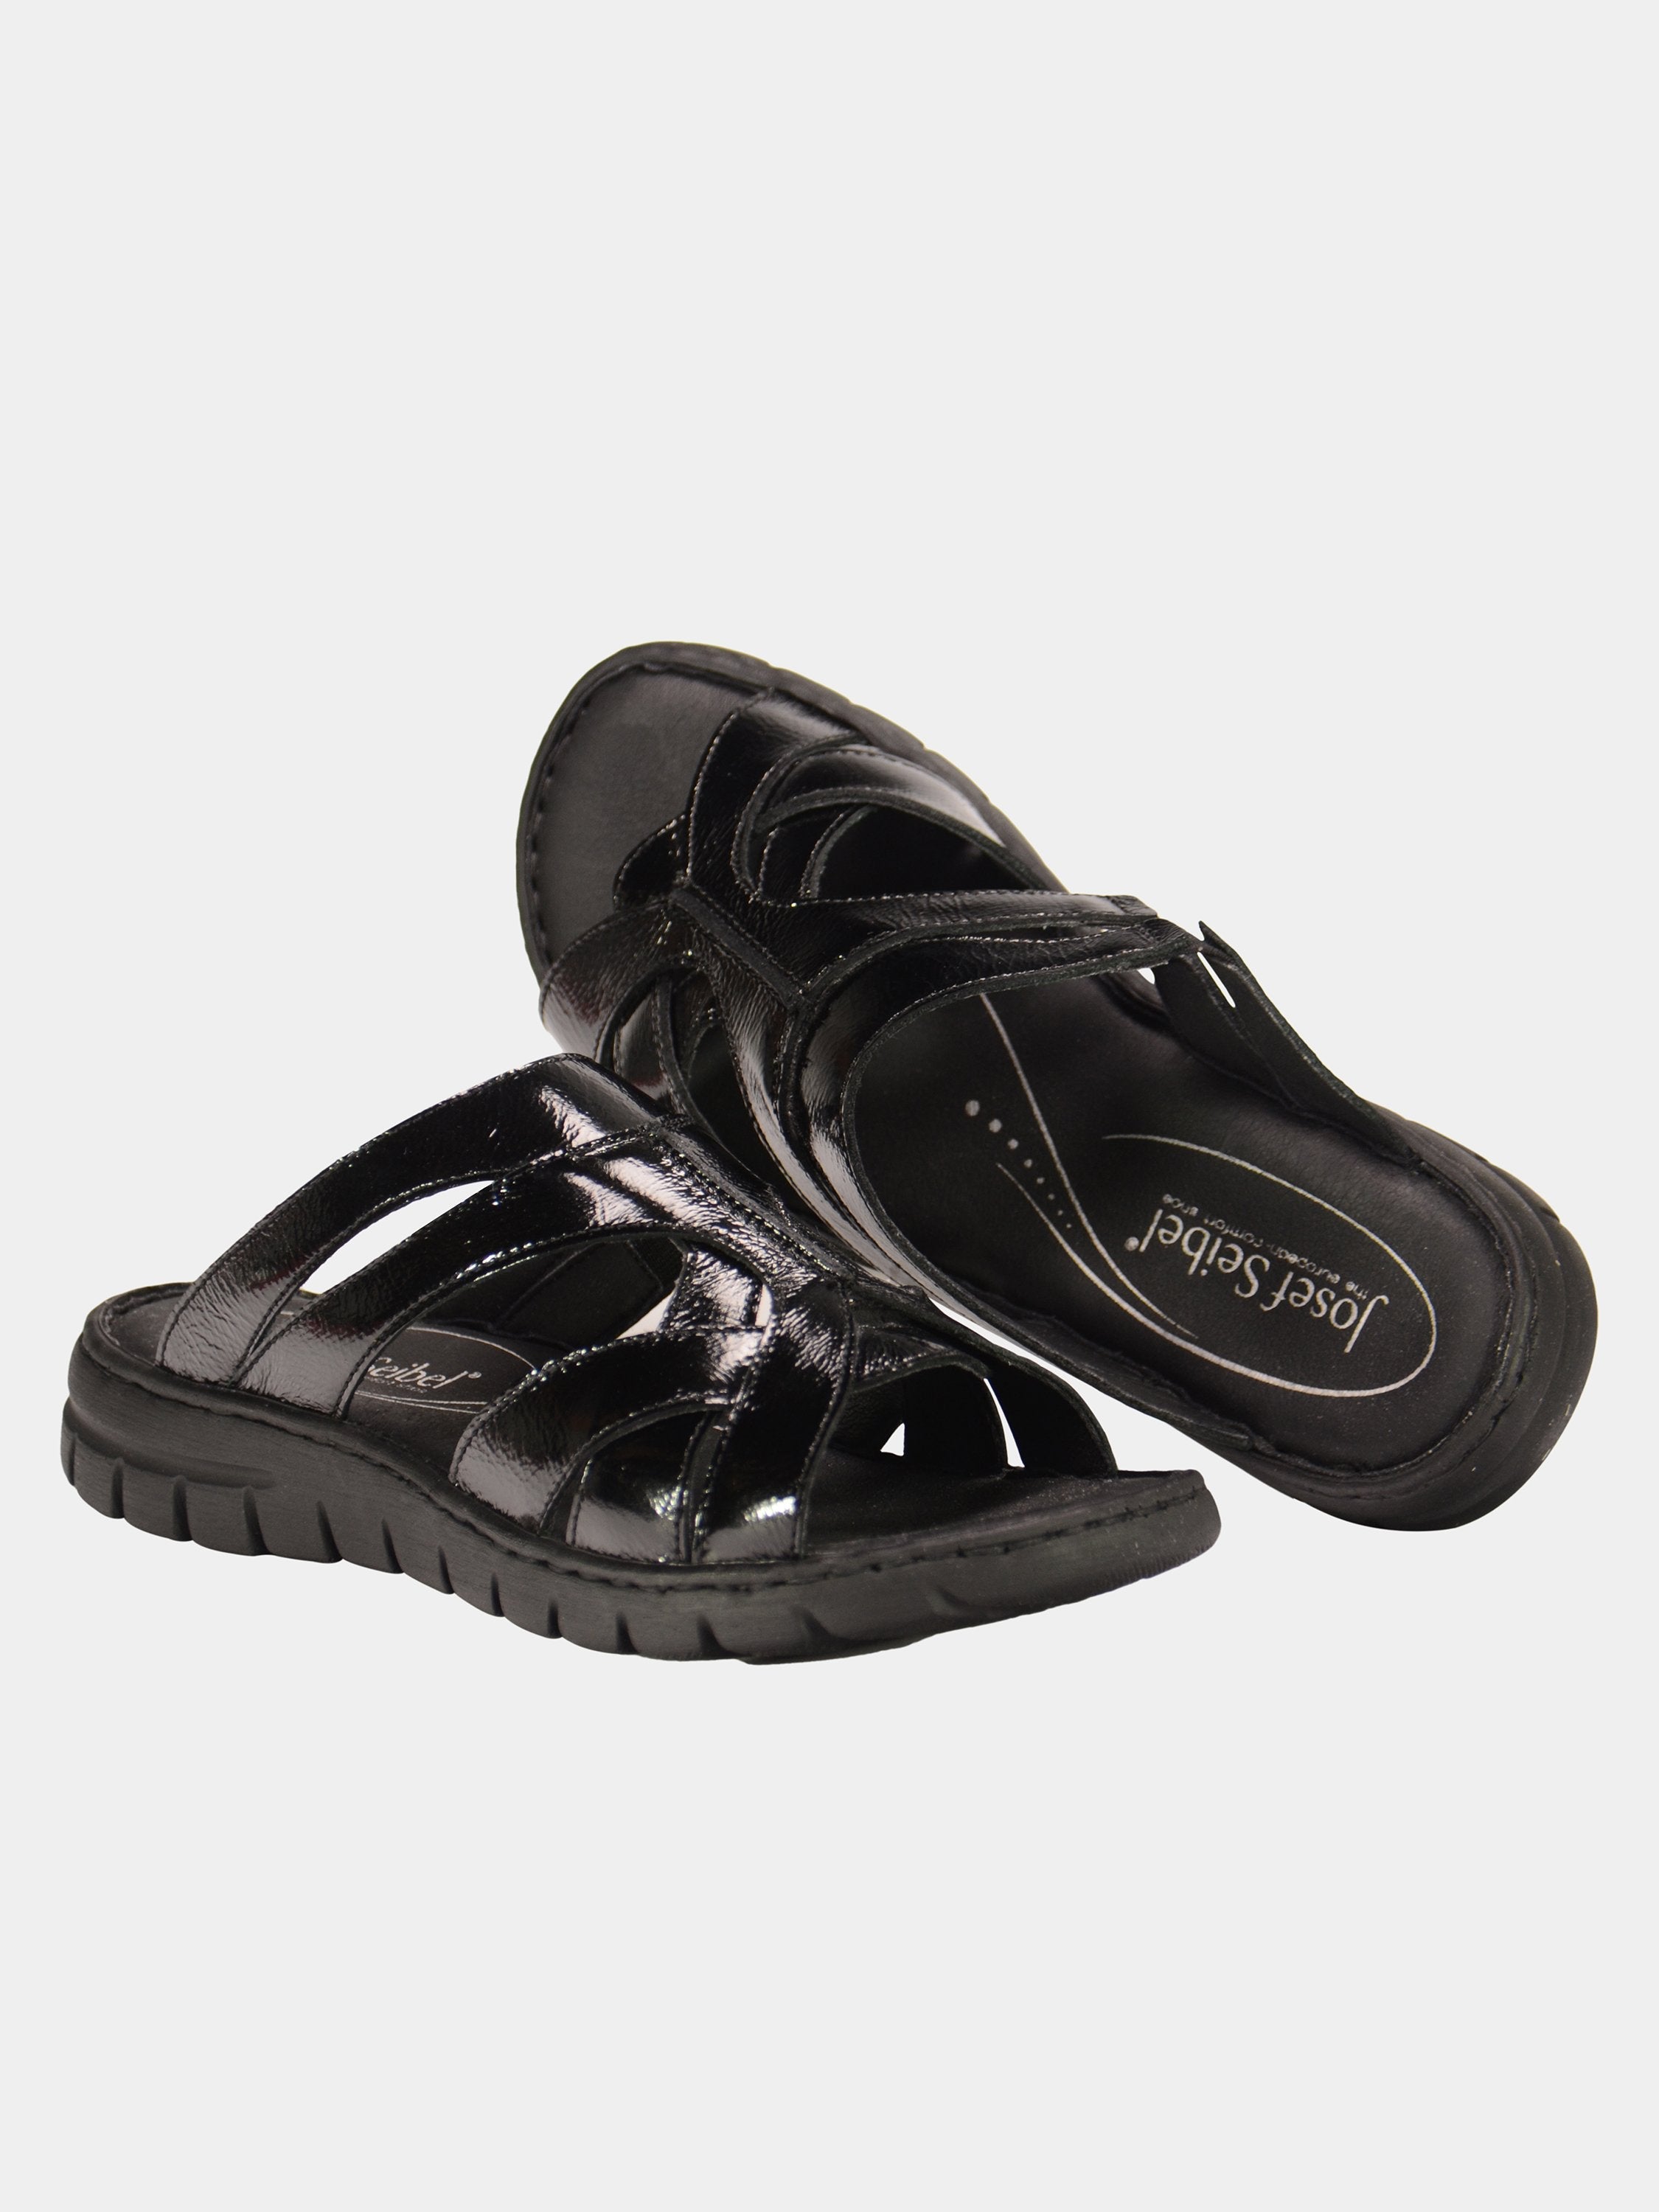 Josef Seibel Women's Patent Leather Slider Sandals #color_Black